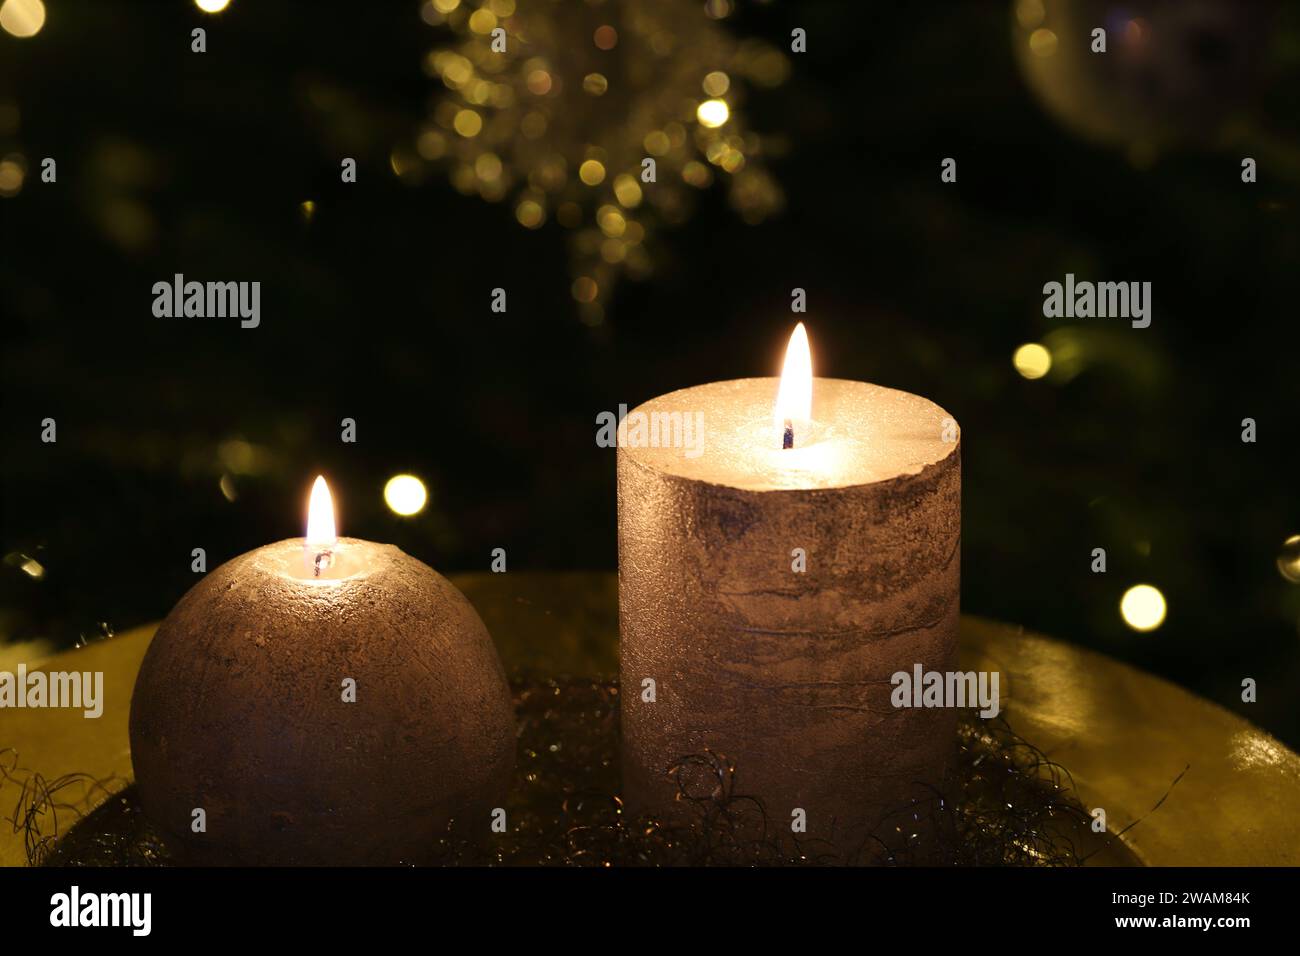 Gros plan de bougies allumées sur une plaque d'or, fond sombre de Noël, vue de côté, espace de copie Banque D'Images